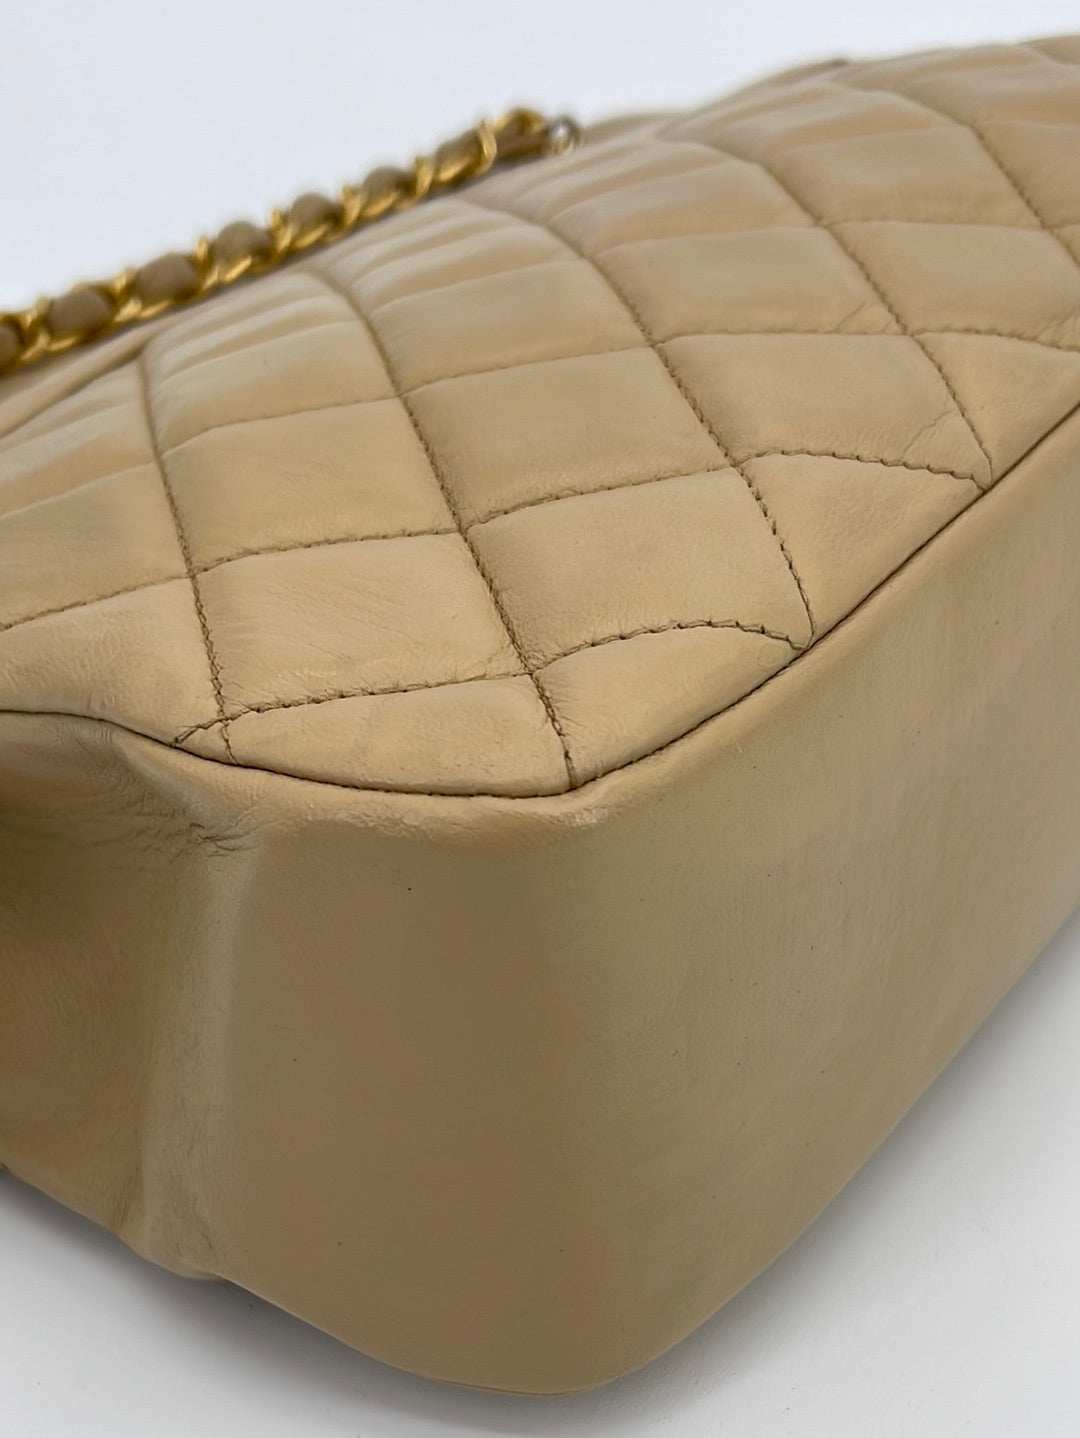 Preloved CHANEL Beige Matelasse Leather Chain Shoulder Bag 1257772 041823